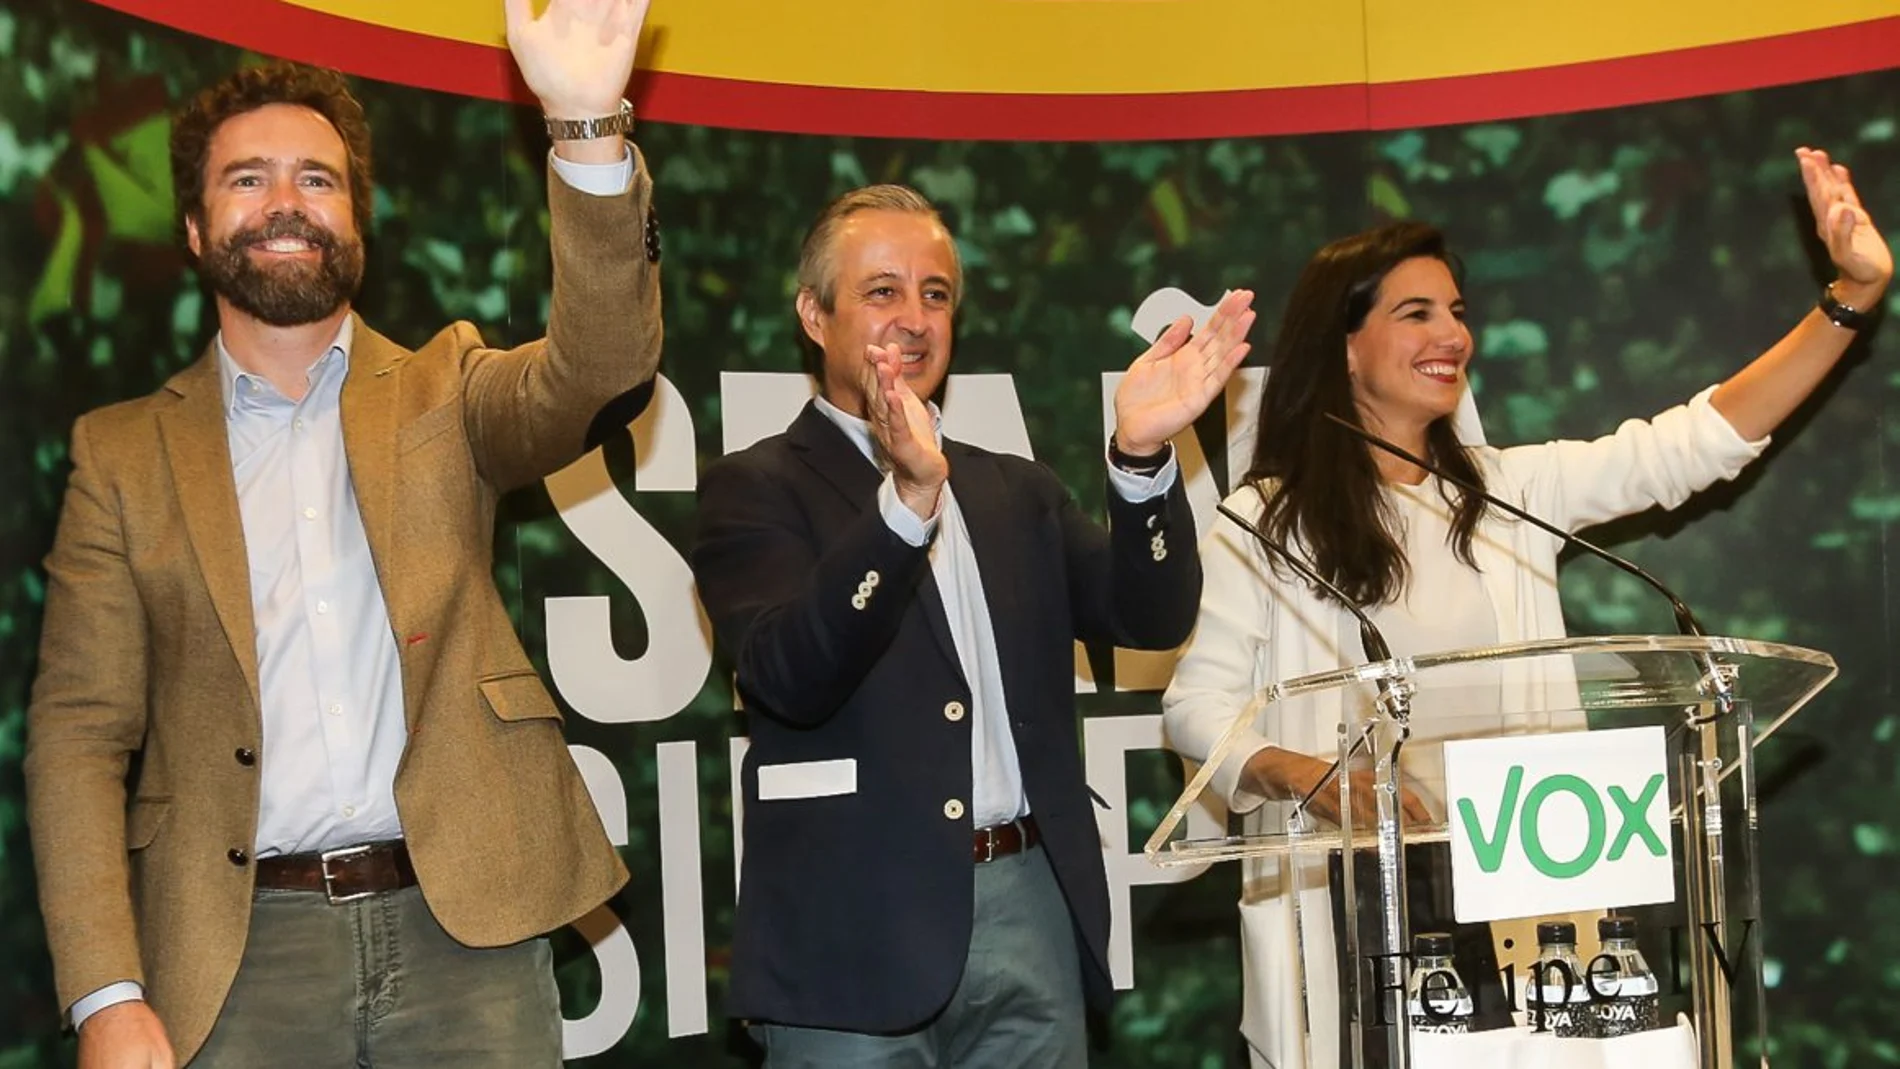 El candidato al Congreso por Valladolid, Pablo Sáez, junto a Rocío Monasterio e Iván Espinosa de los Monteros en un acto electoral de Vox